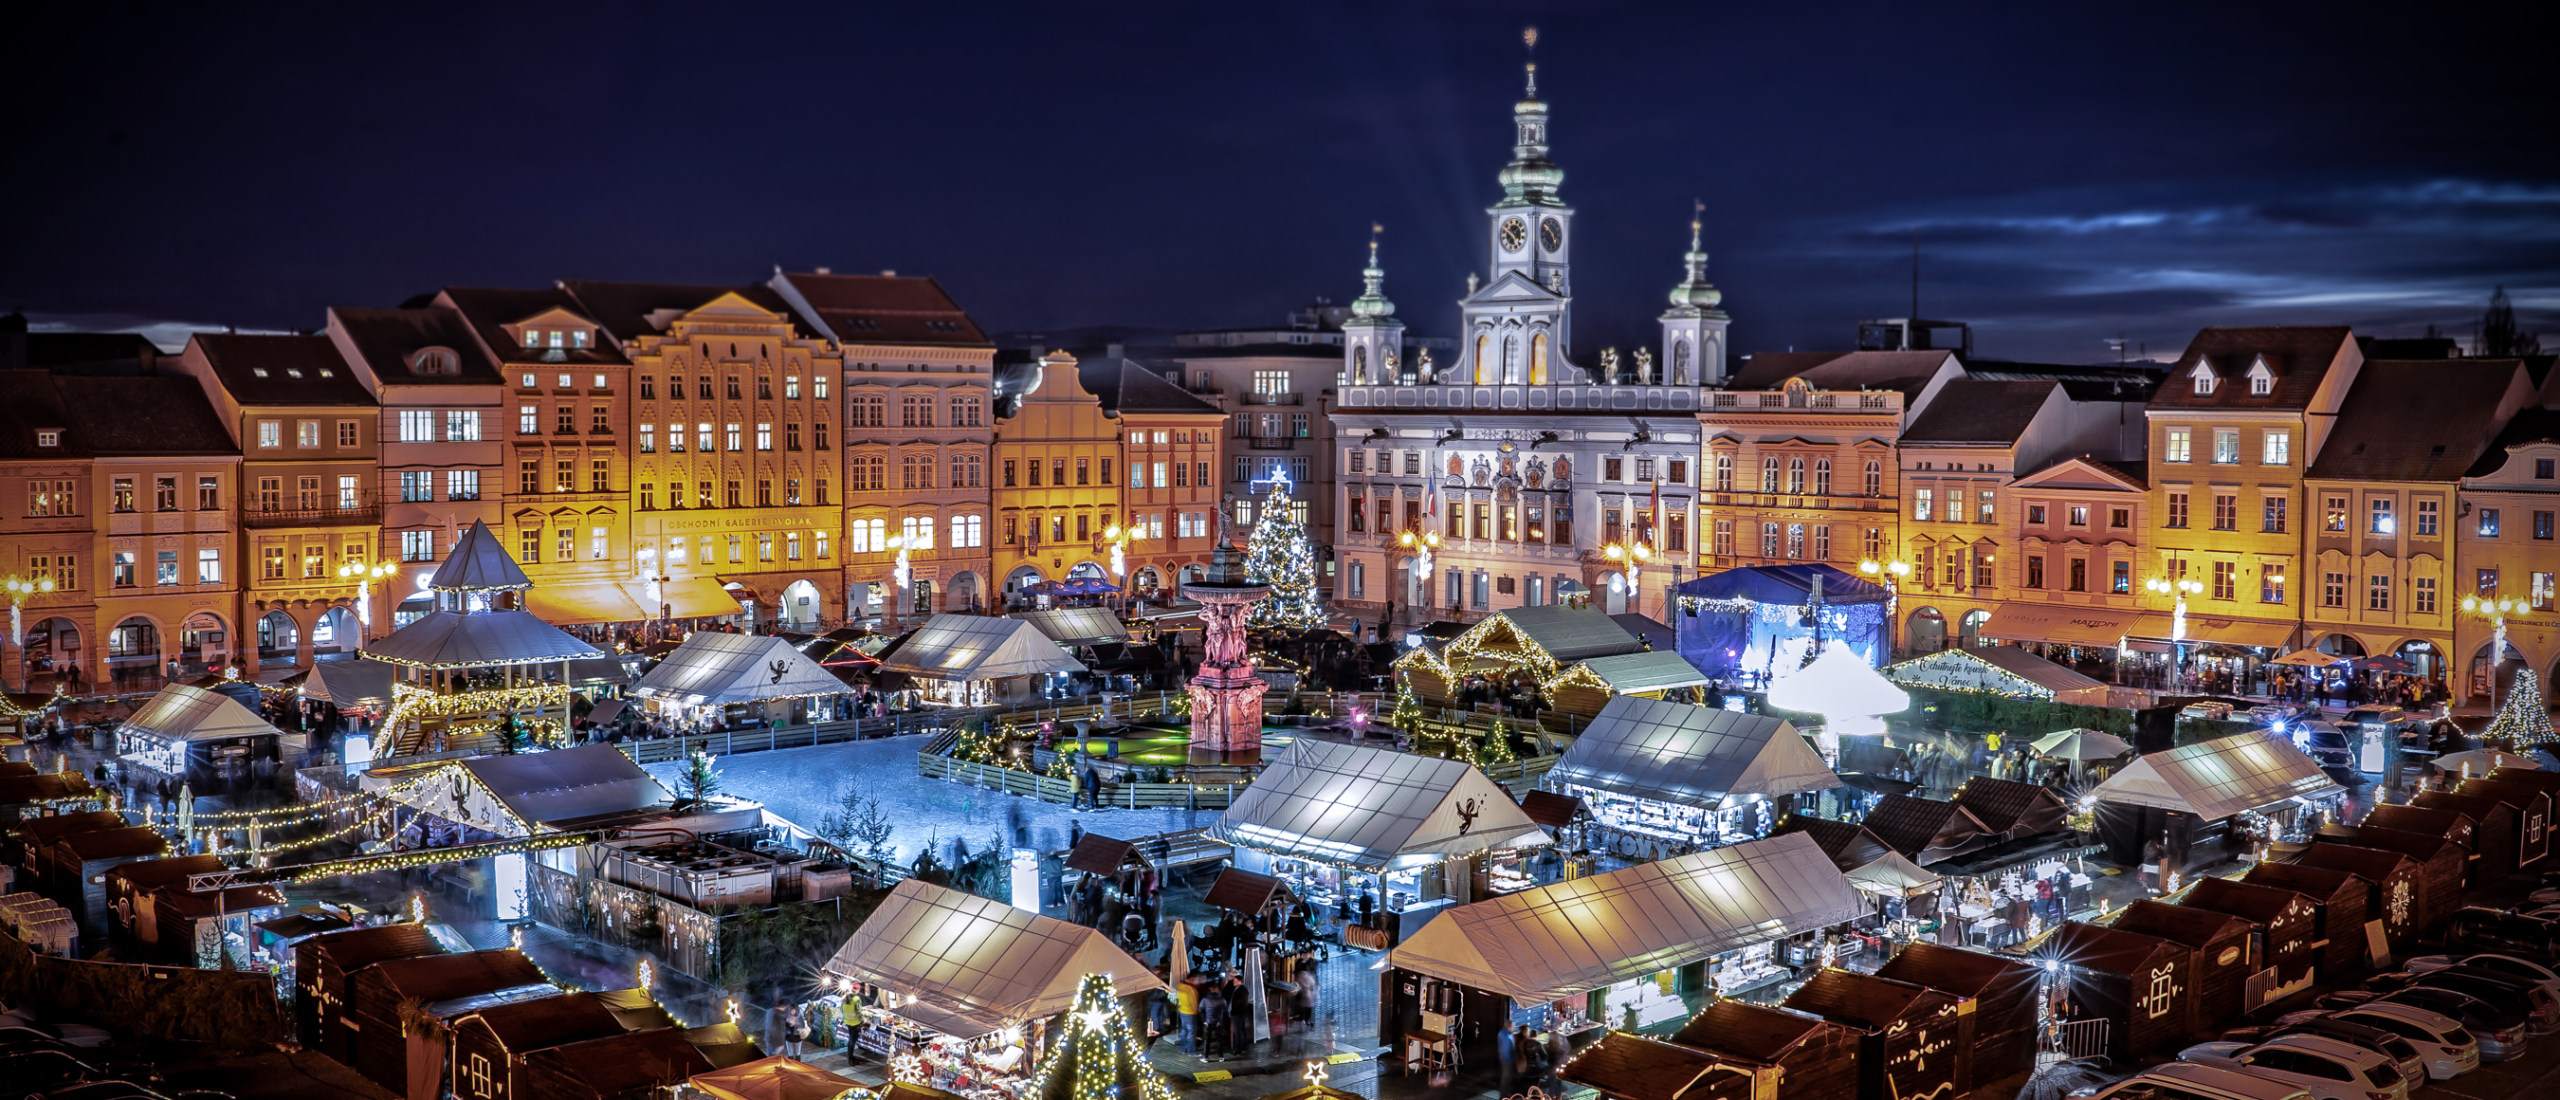 Die schönsten Weihnachtsmärkte in Tschechien